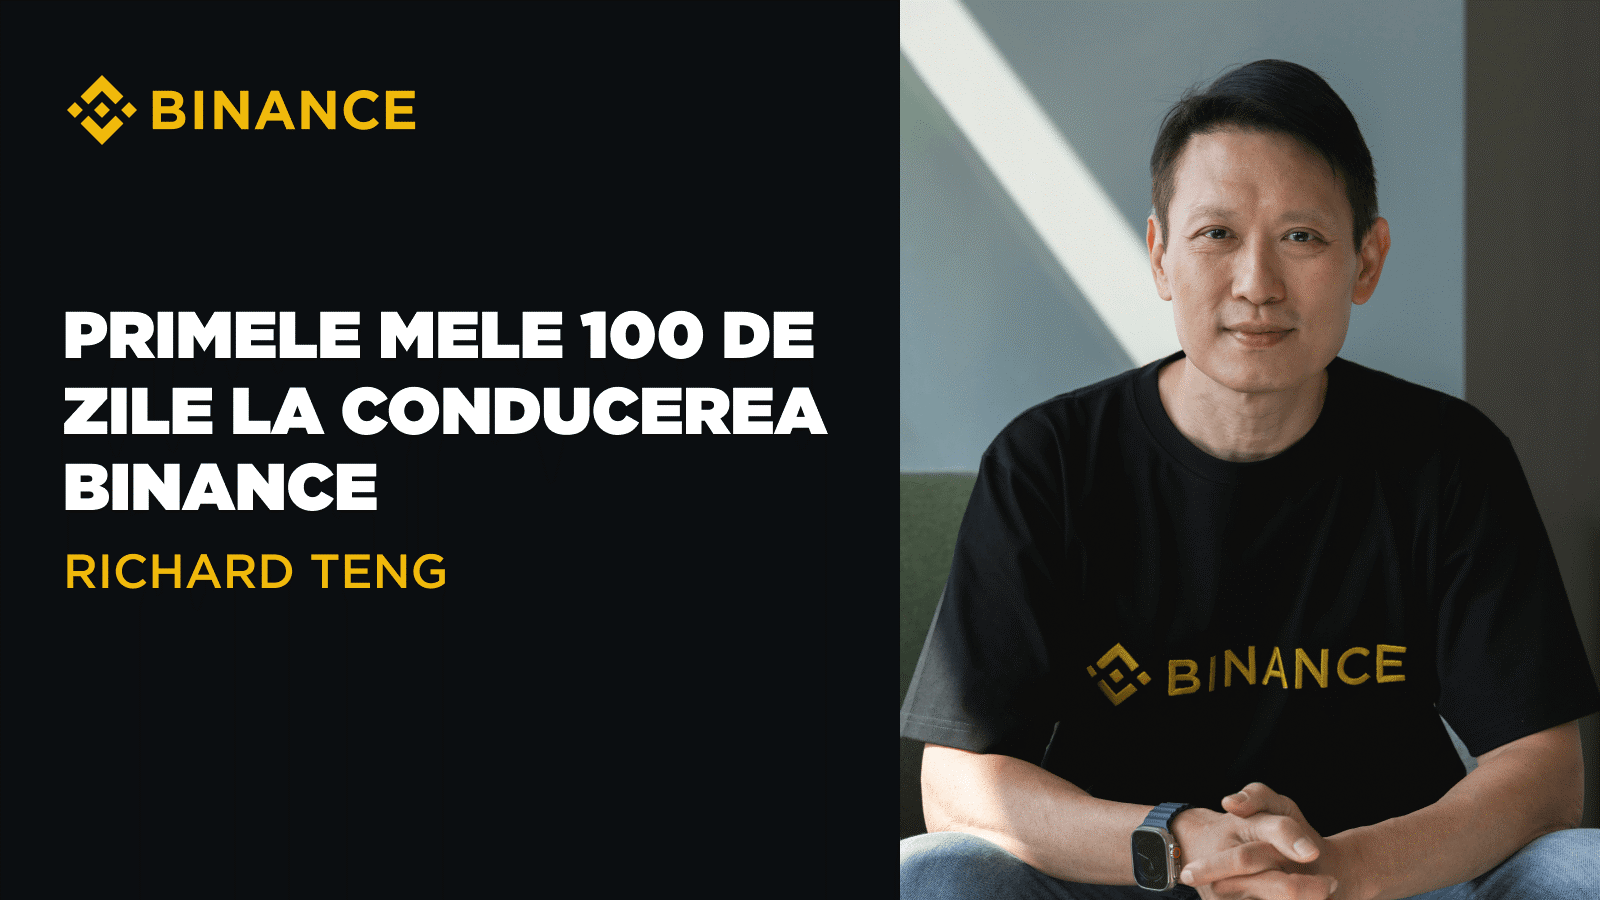 Richard Teng: Primele mele 100 de zile la conducerea Binance